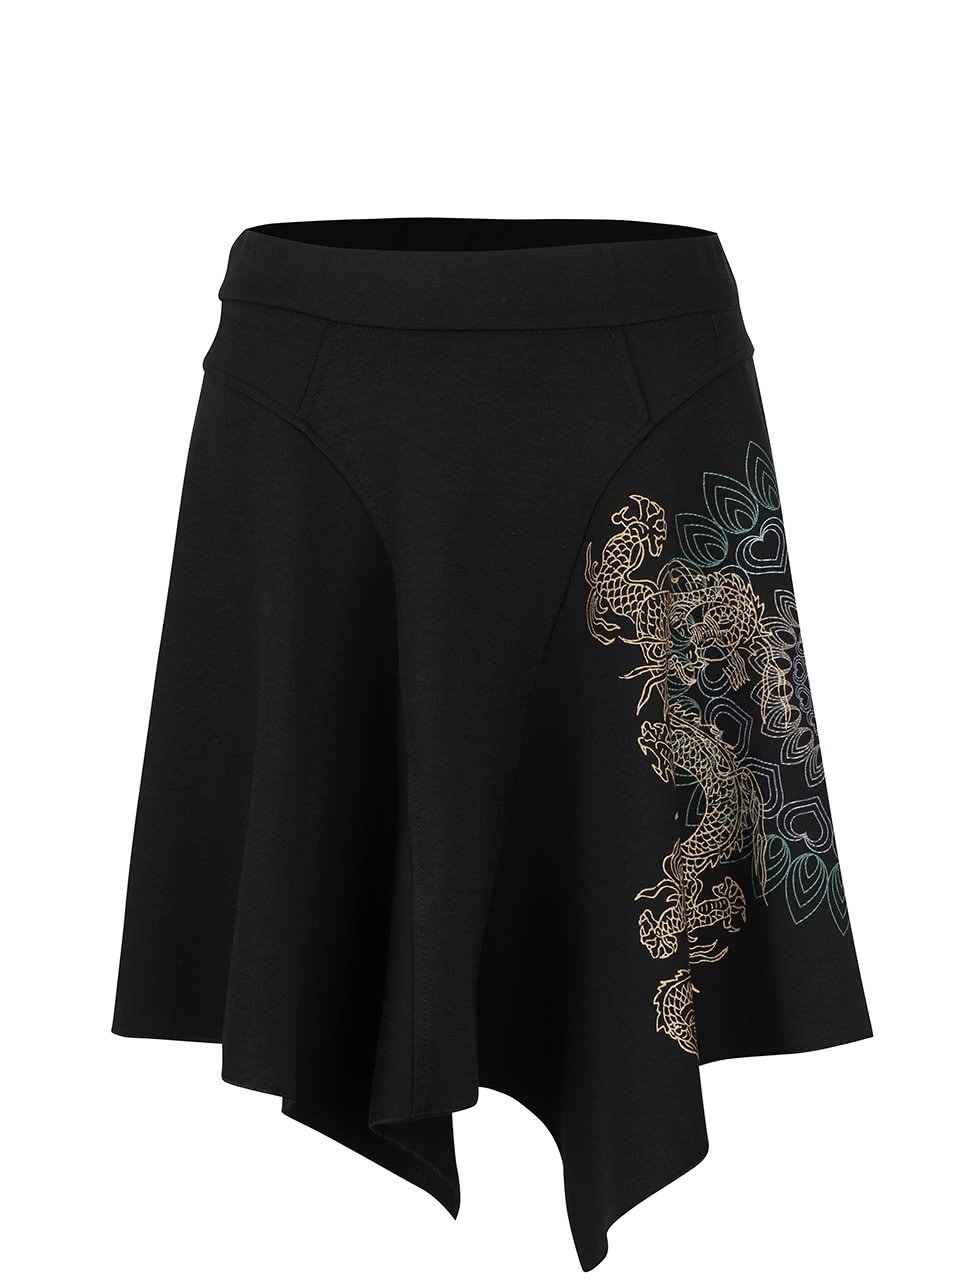 Černá sukně se vzorem Desigual Dragon Dance